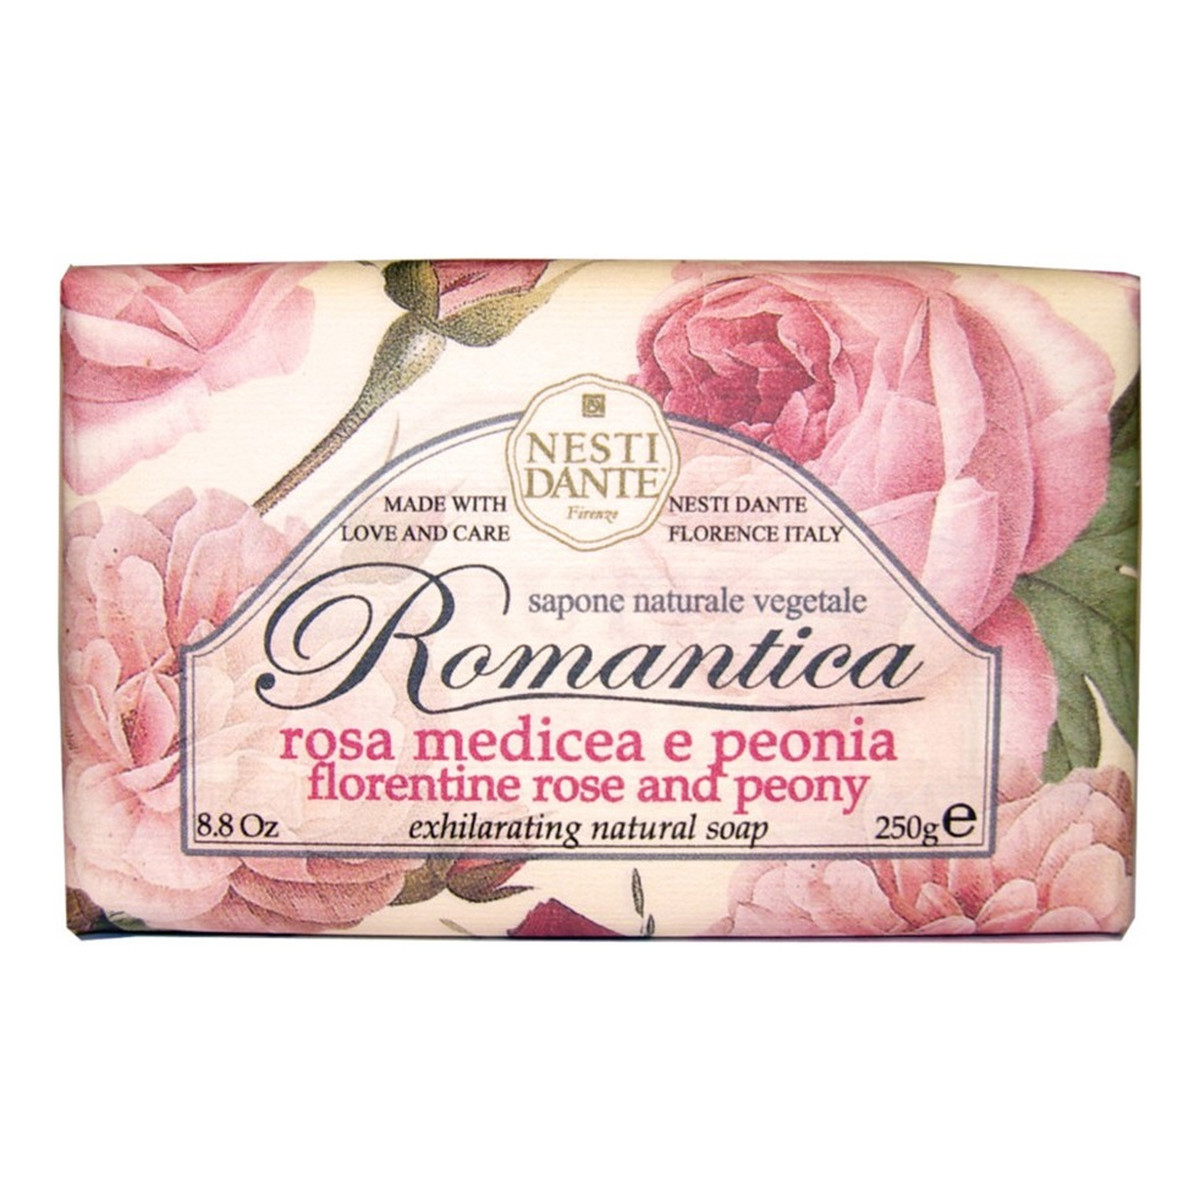 Nesti Dante Romantica Mydło toaletowe róża & peonia 250g